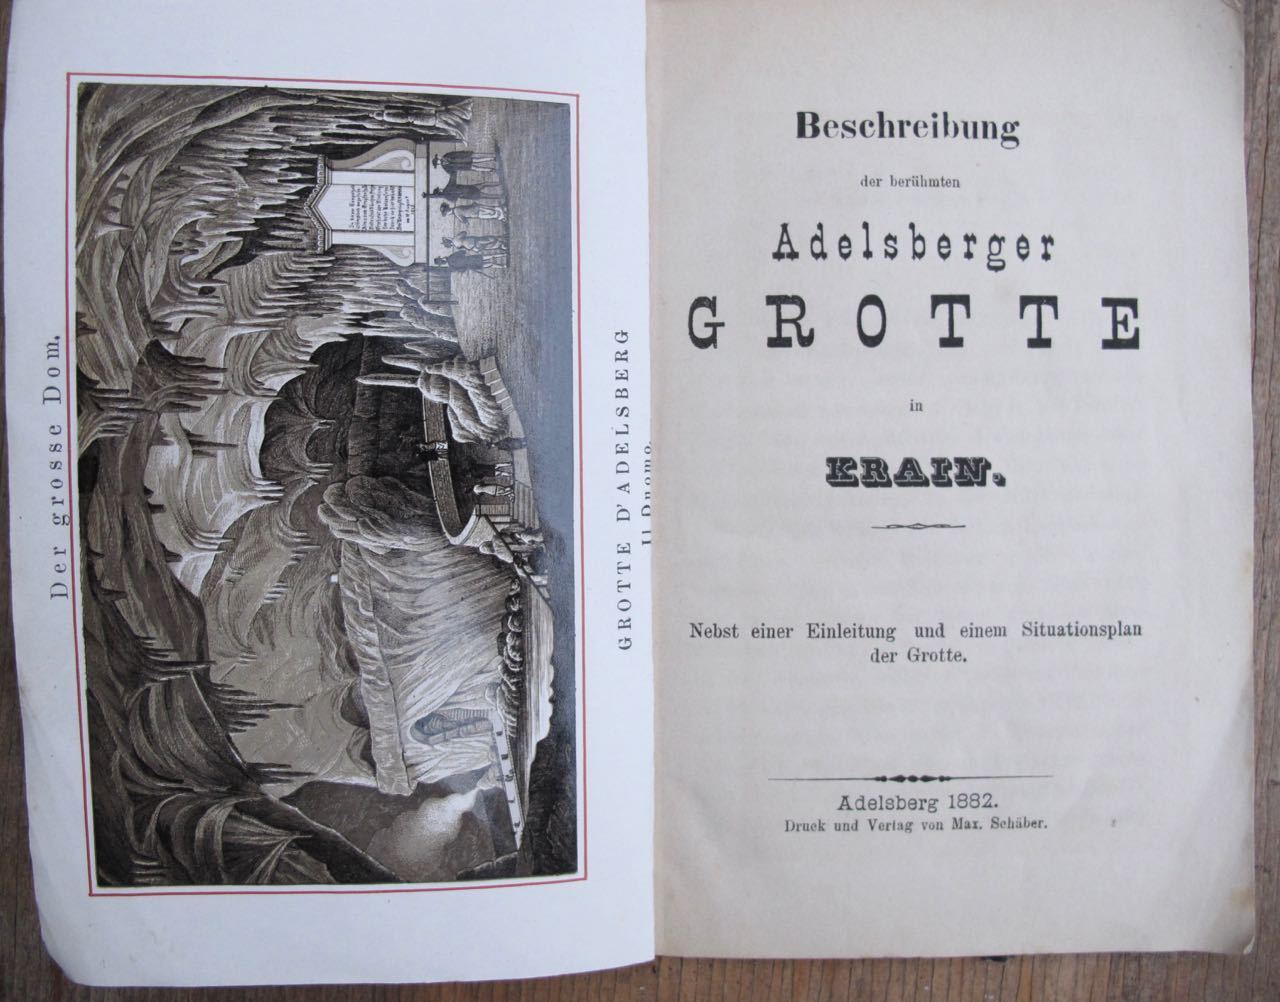 Beschreibung der Adelsberger Grotte 1882